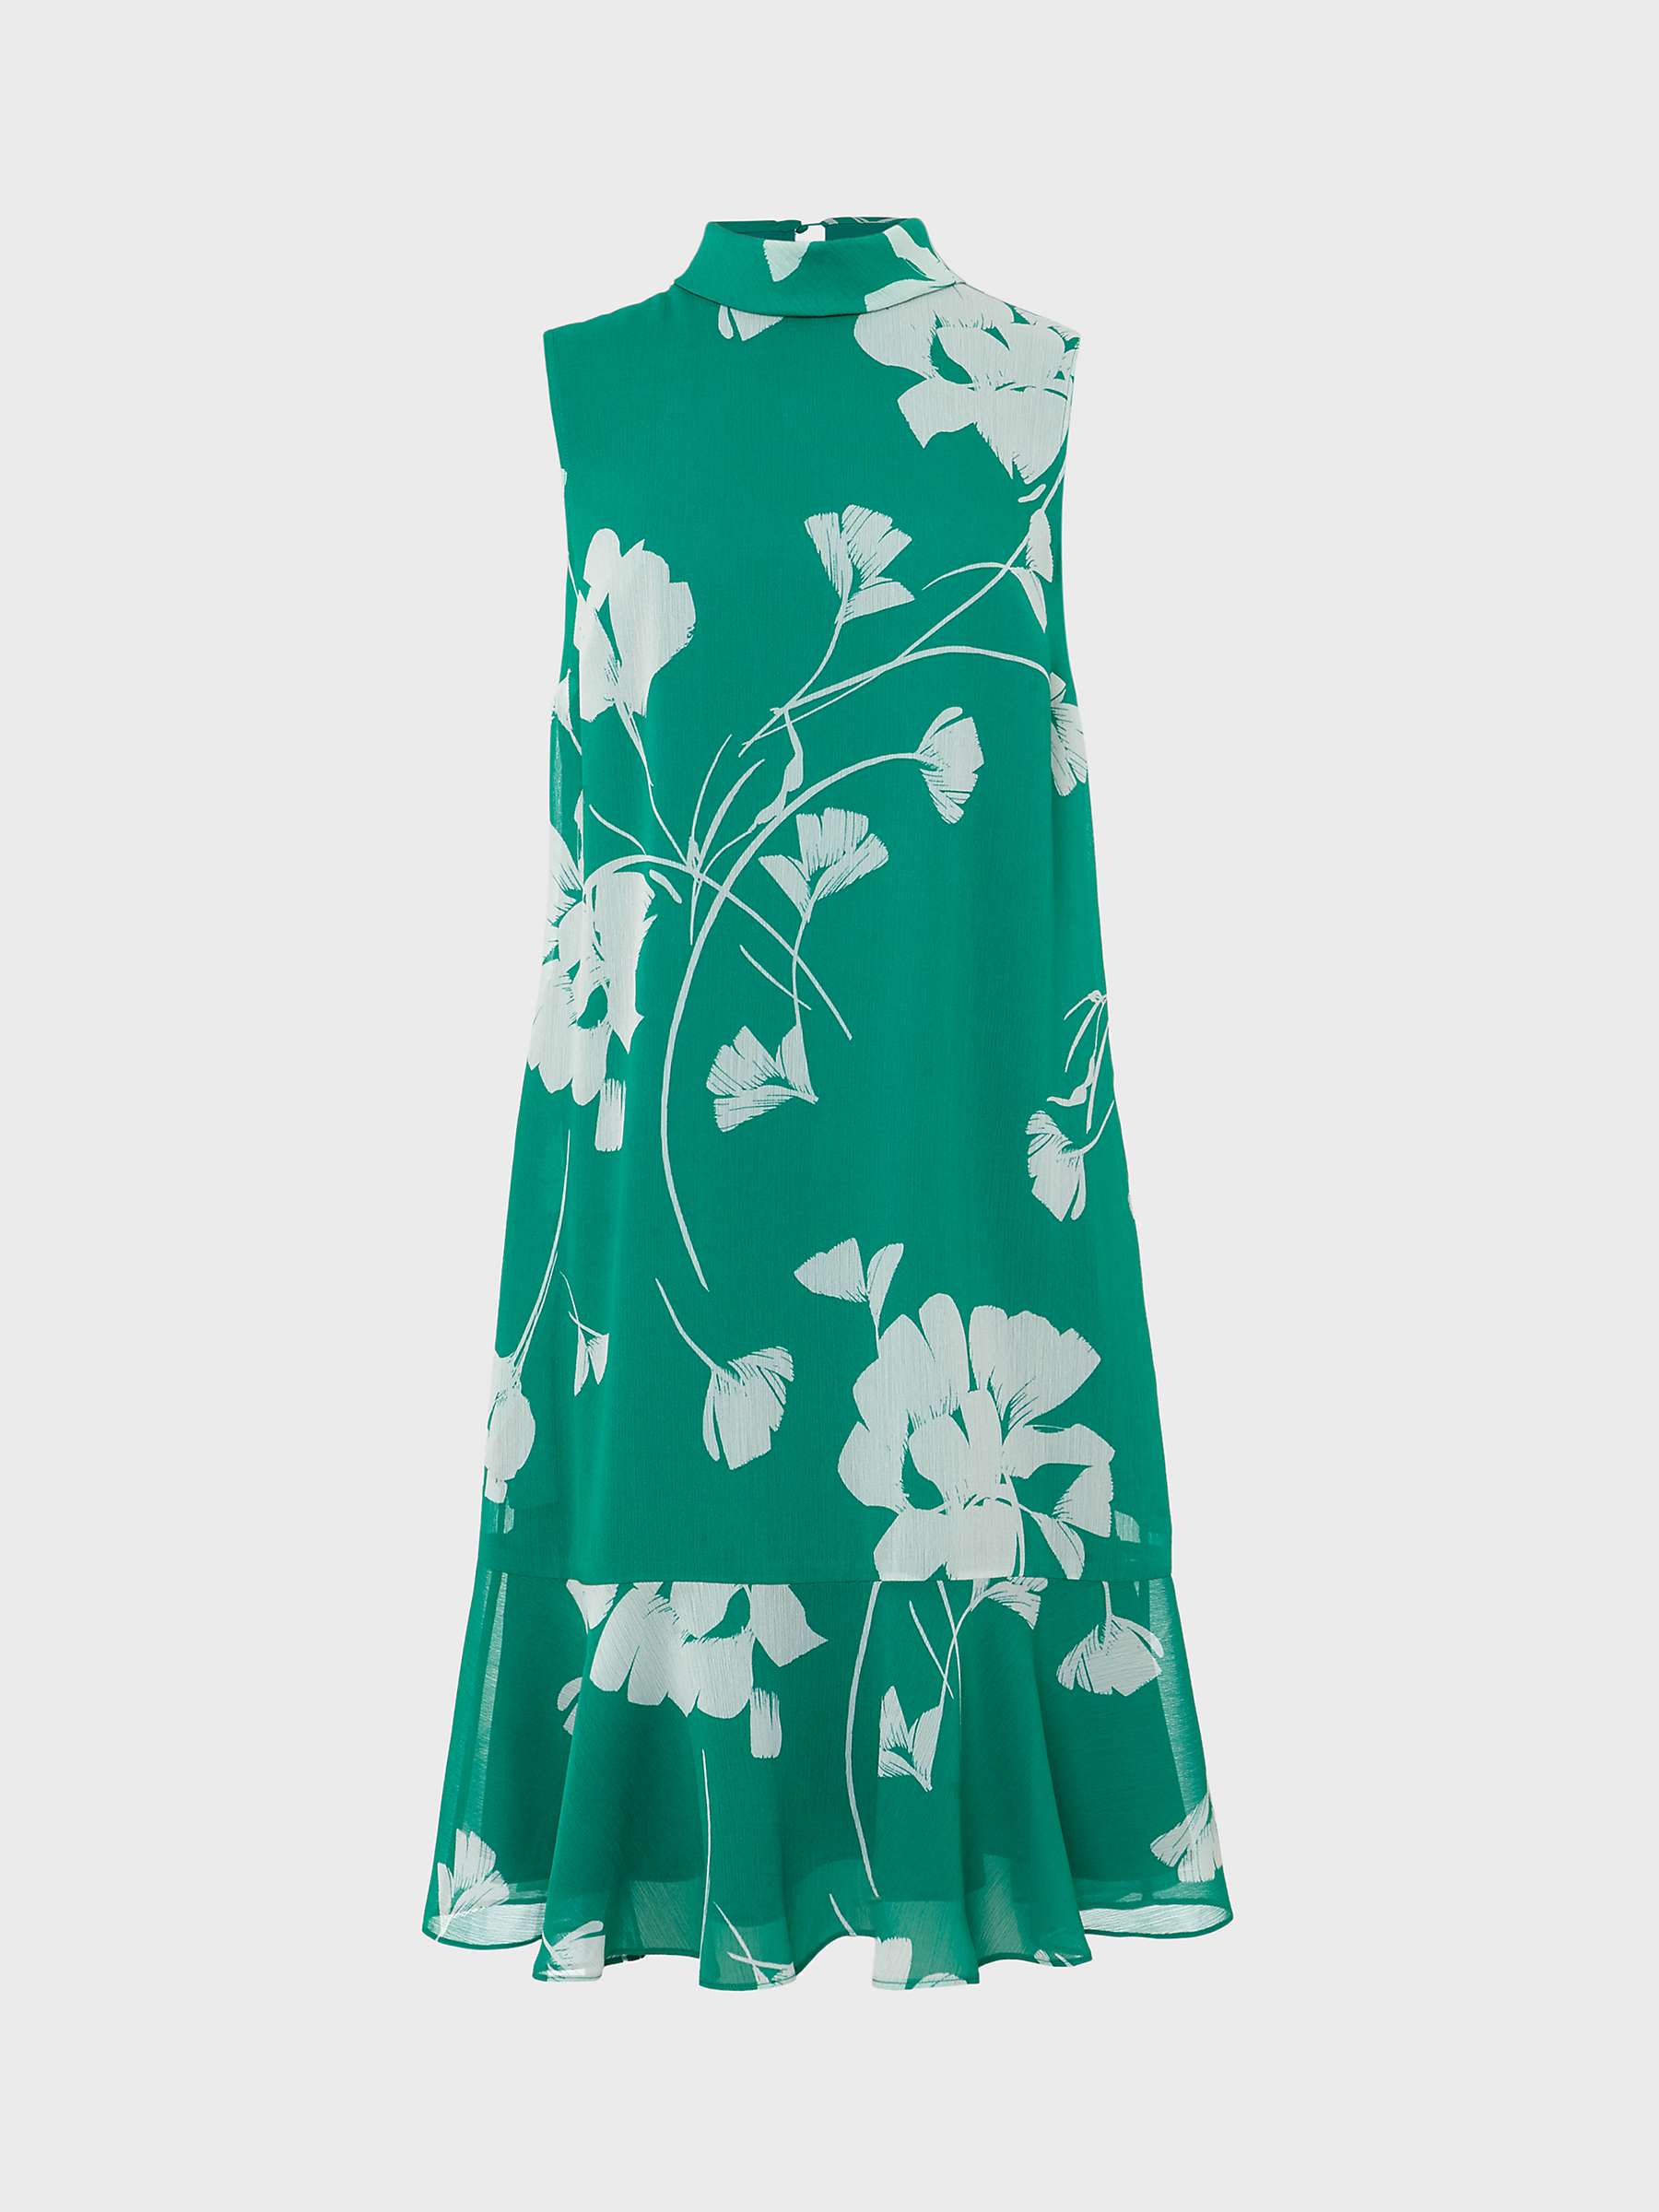 Buy Hobbs Madeline High Neck Floral Print Dress, Green/Ivory Online at johnlewis.com